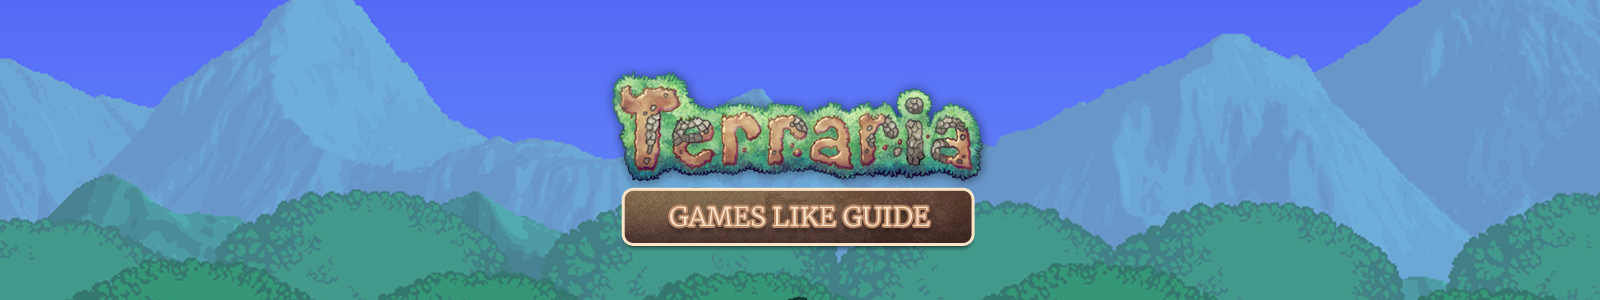 Terraria spellen zoals gids